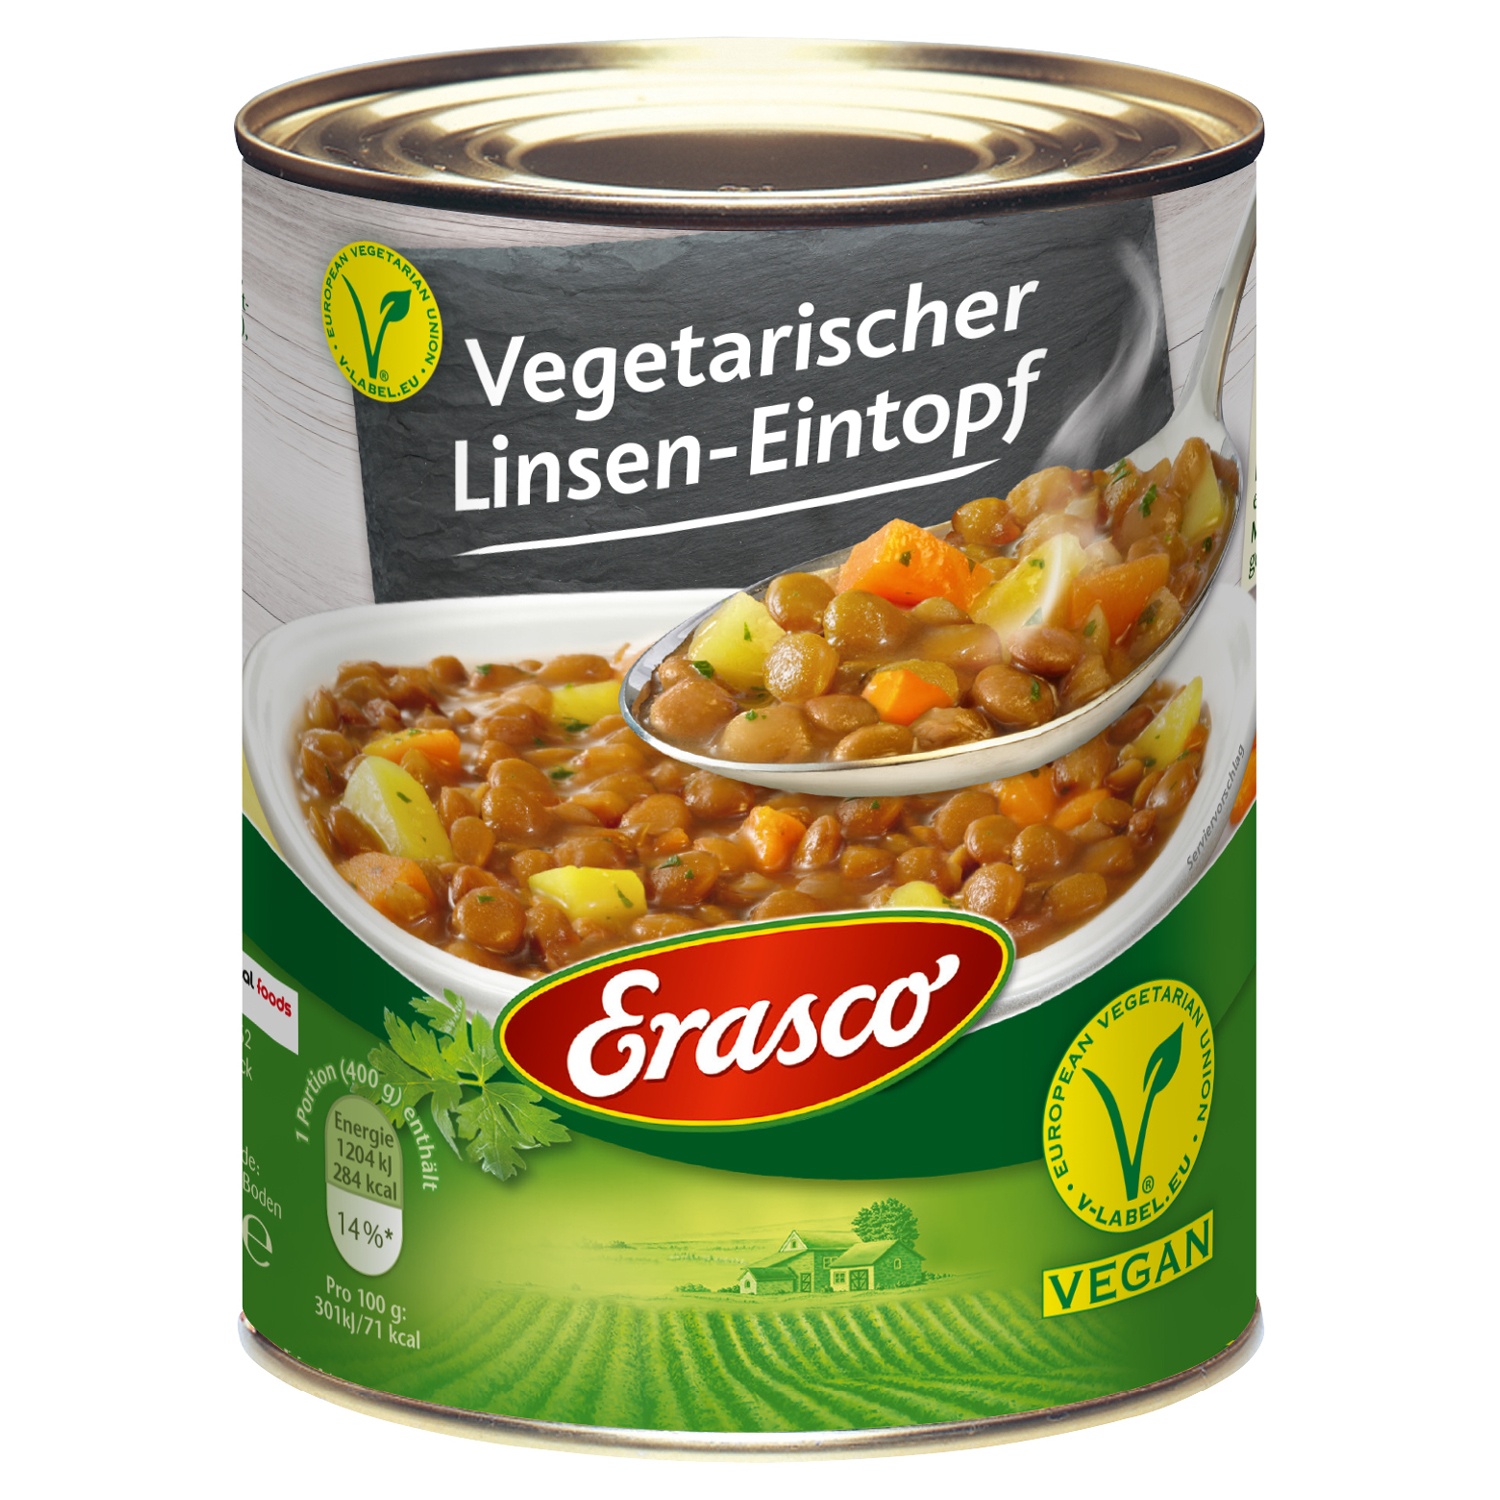 Erasco Vegetarischer Eintopf 800 g